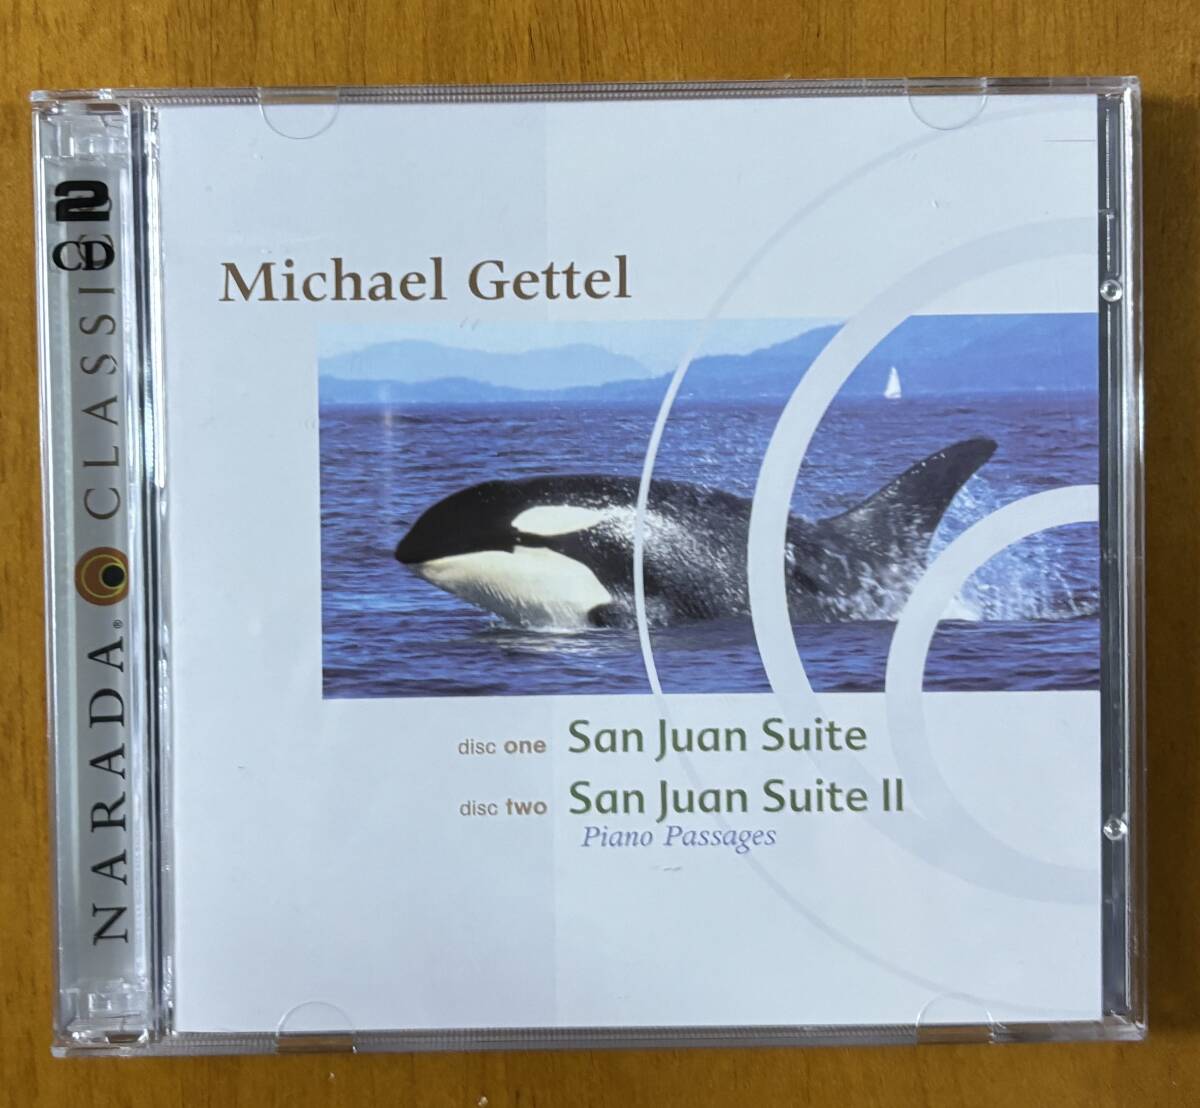 〔癒やしのNARADA〕マイケル・ゲッテル2CD 『サン・フアン組曲Ⅰ/サン・フアン組曲Ⅱ」ピアノ_画像1